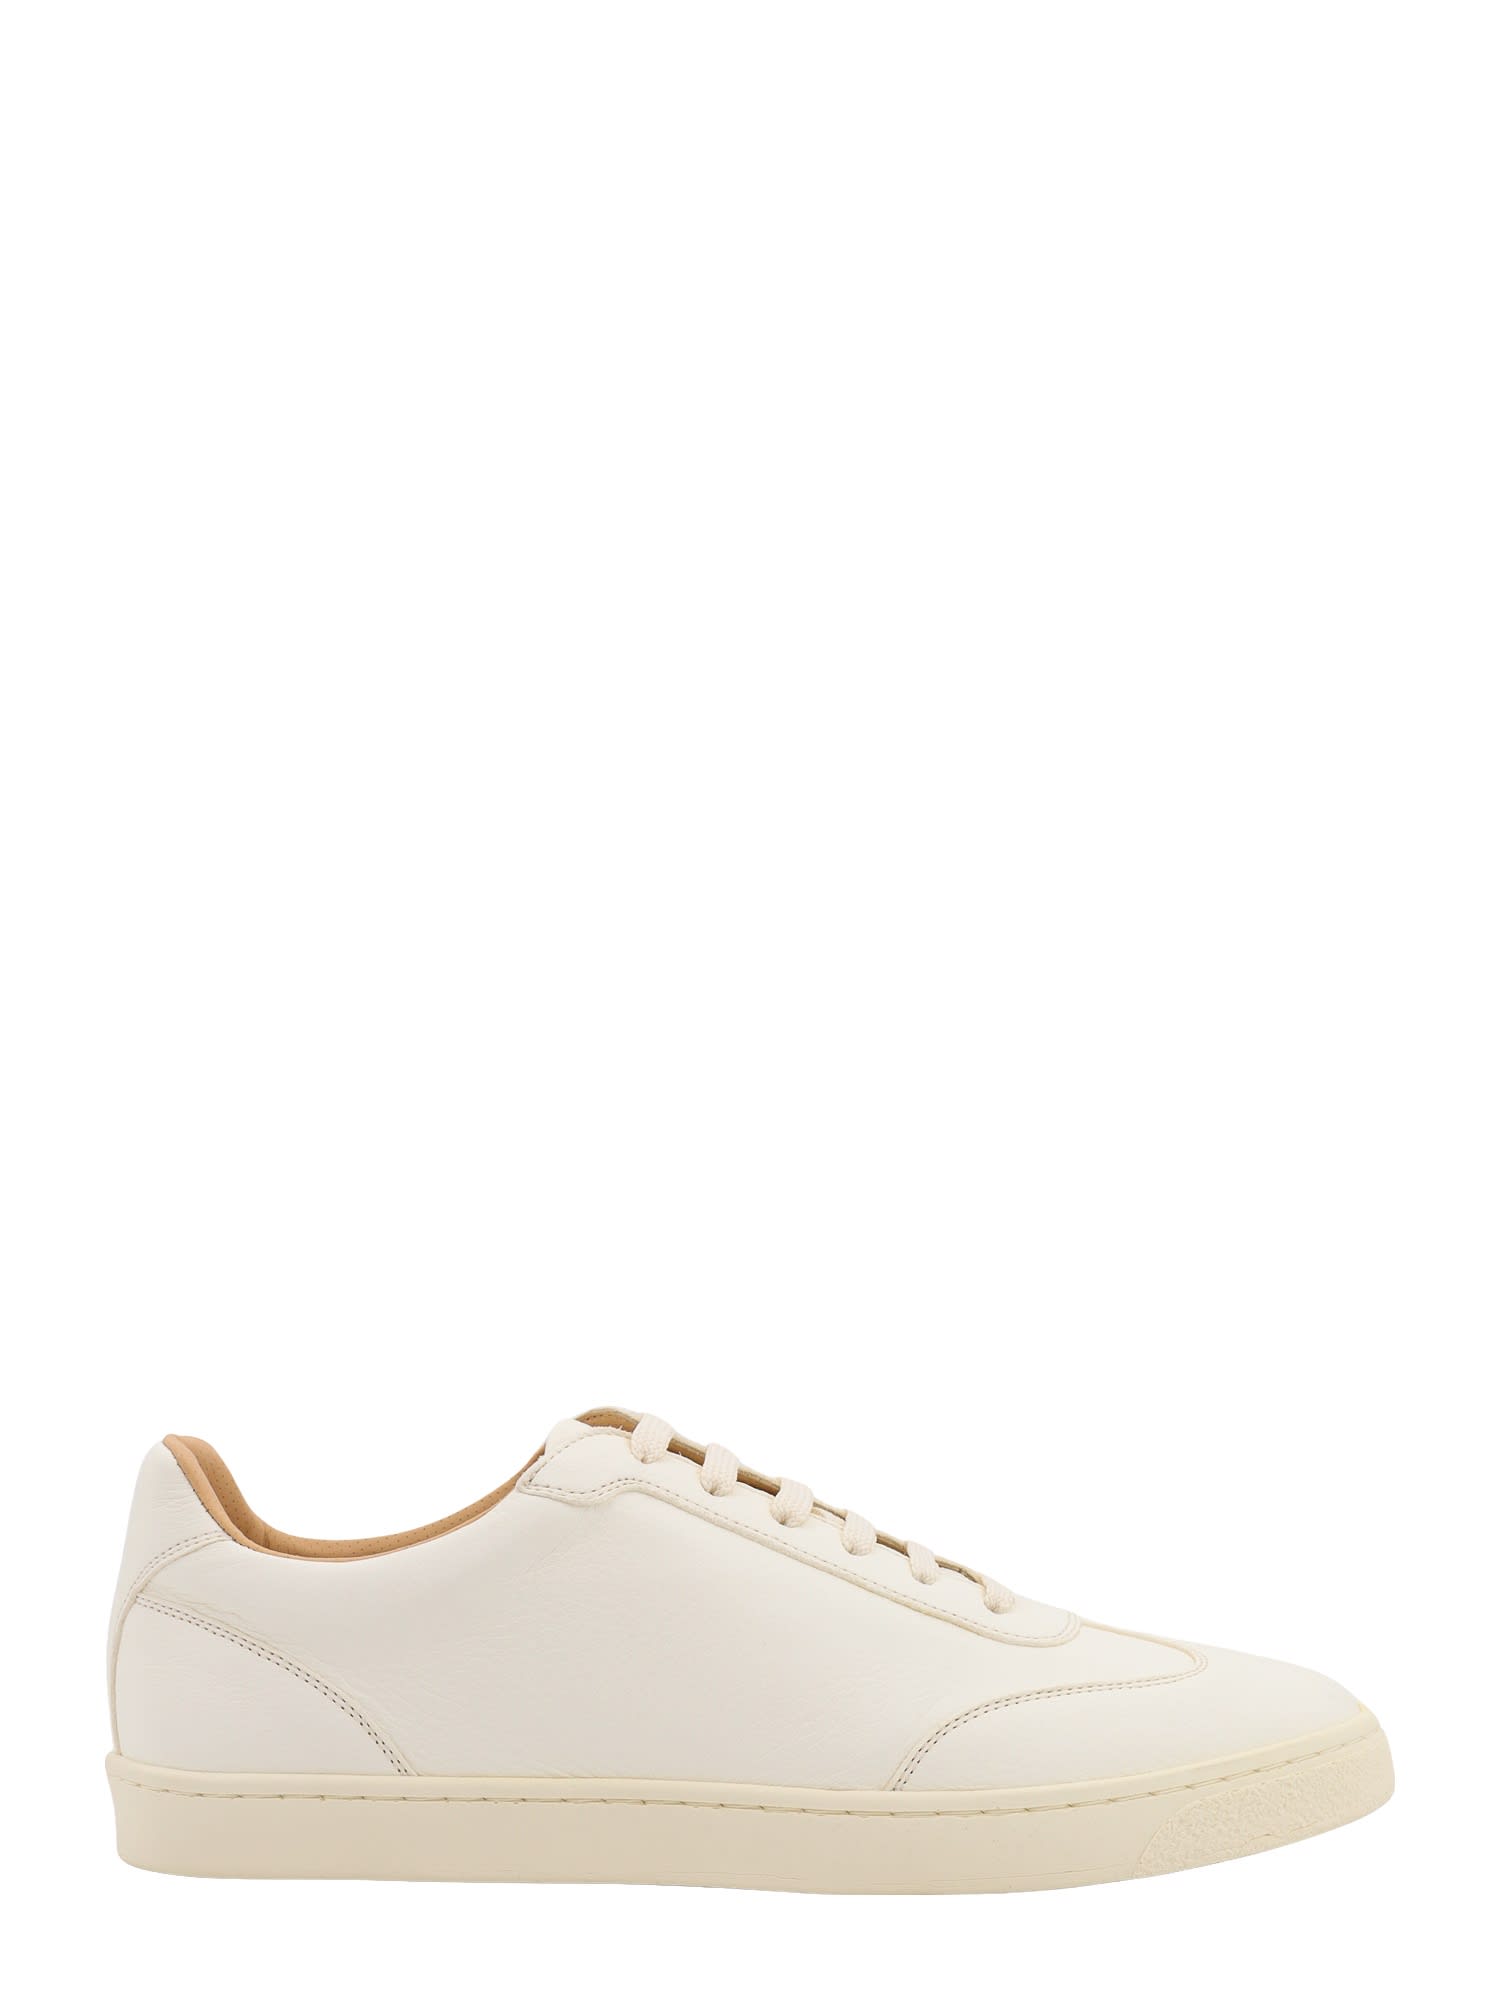 Shop Brunello Cucinelli Sneakers In Panama (white)